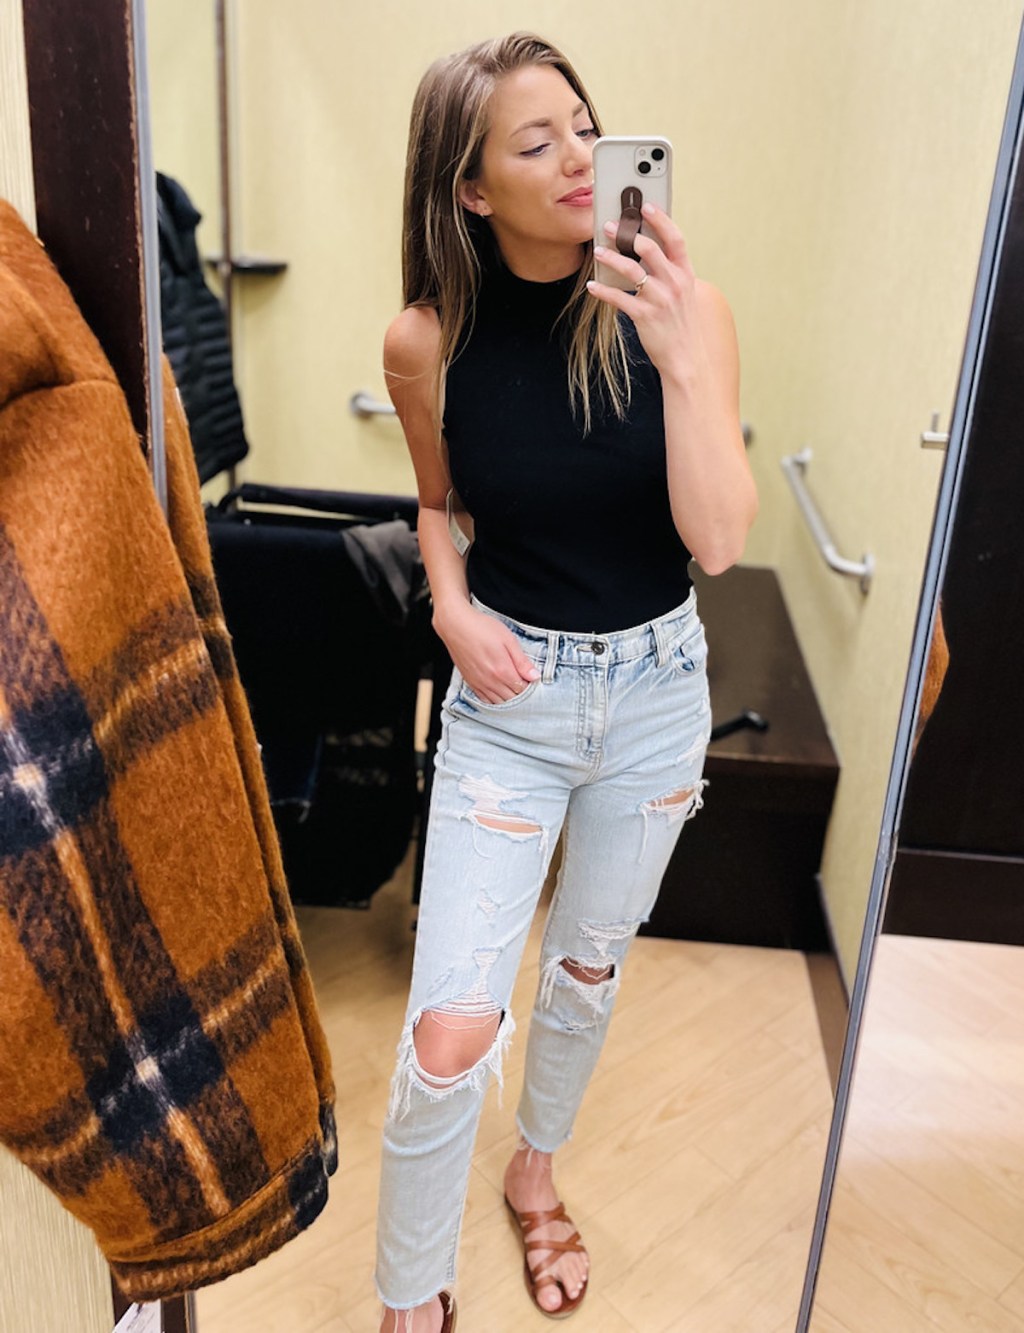 woman taking selfie in dressing room mirror